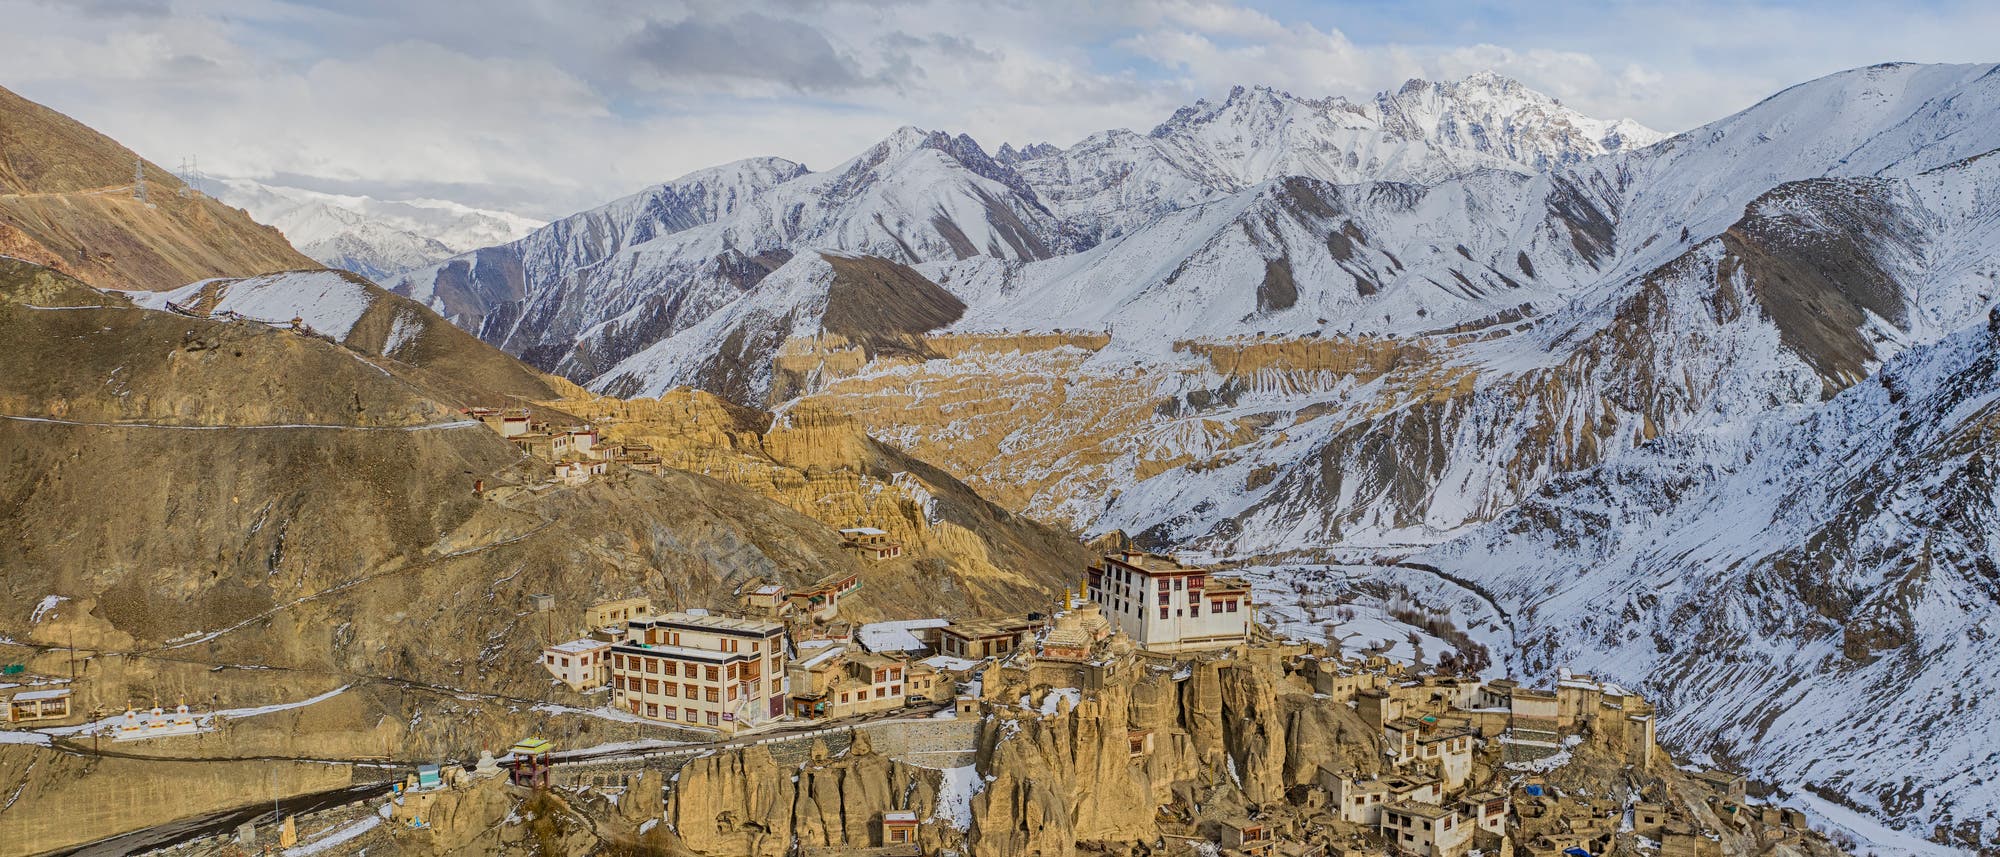 Lamayuru-Kloster im Industal im indischen Ladakh vor Schnee bedeckter Bergkette des Himalaja.